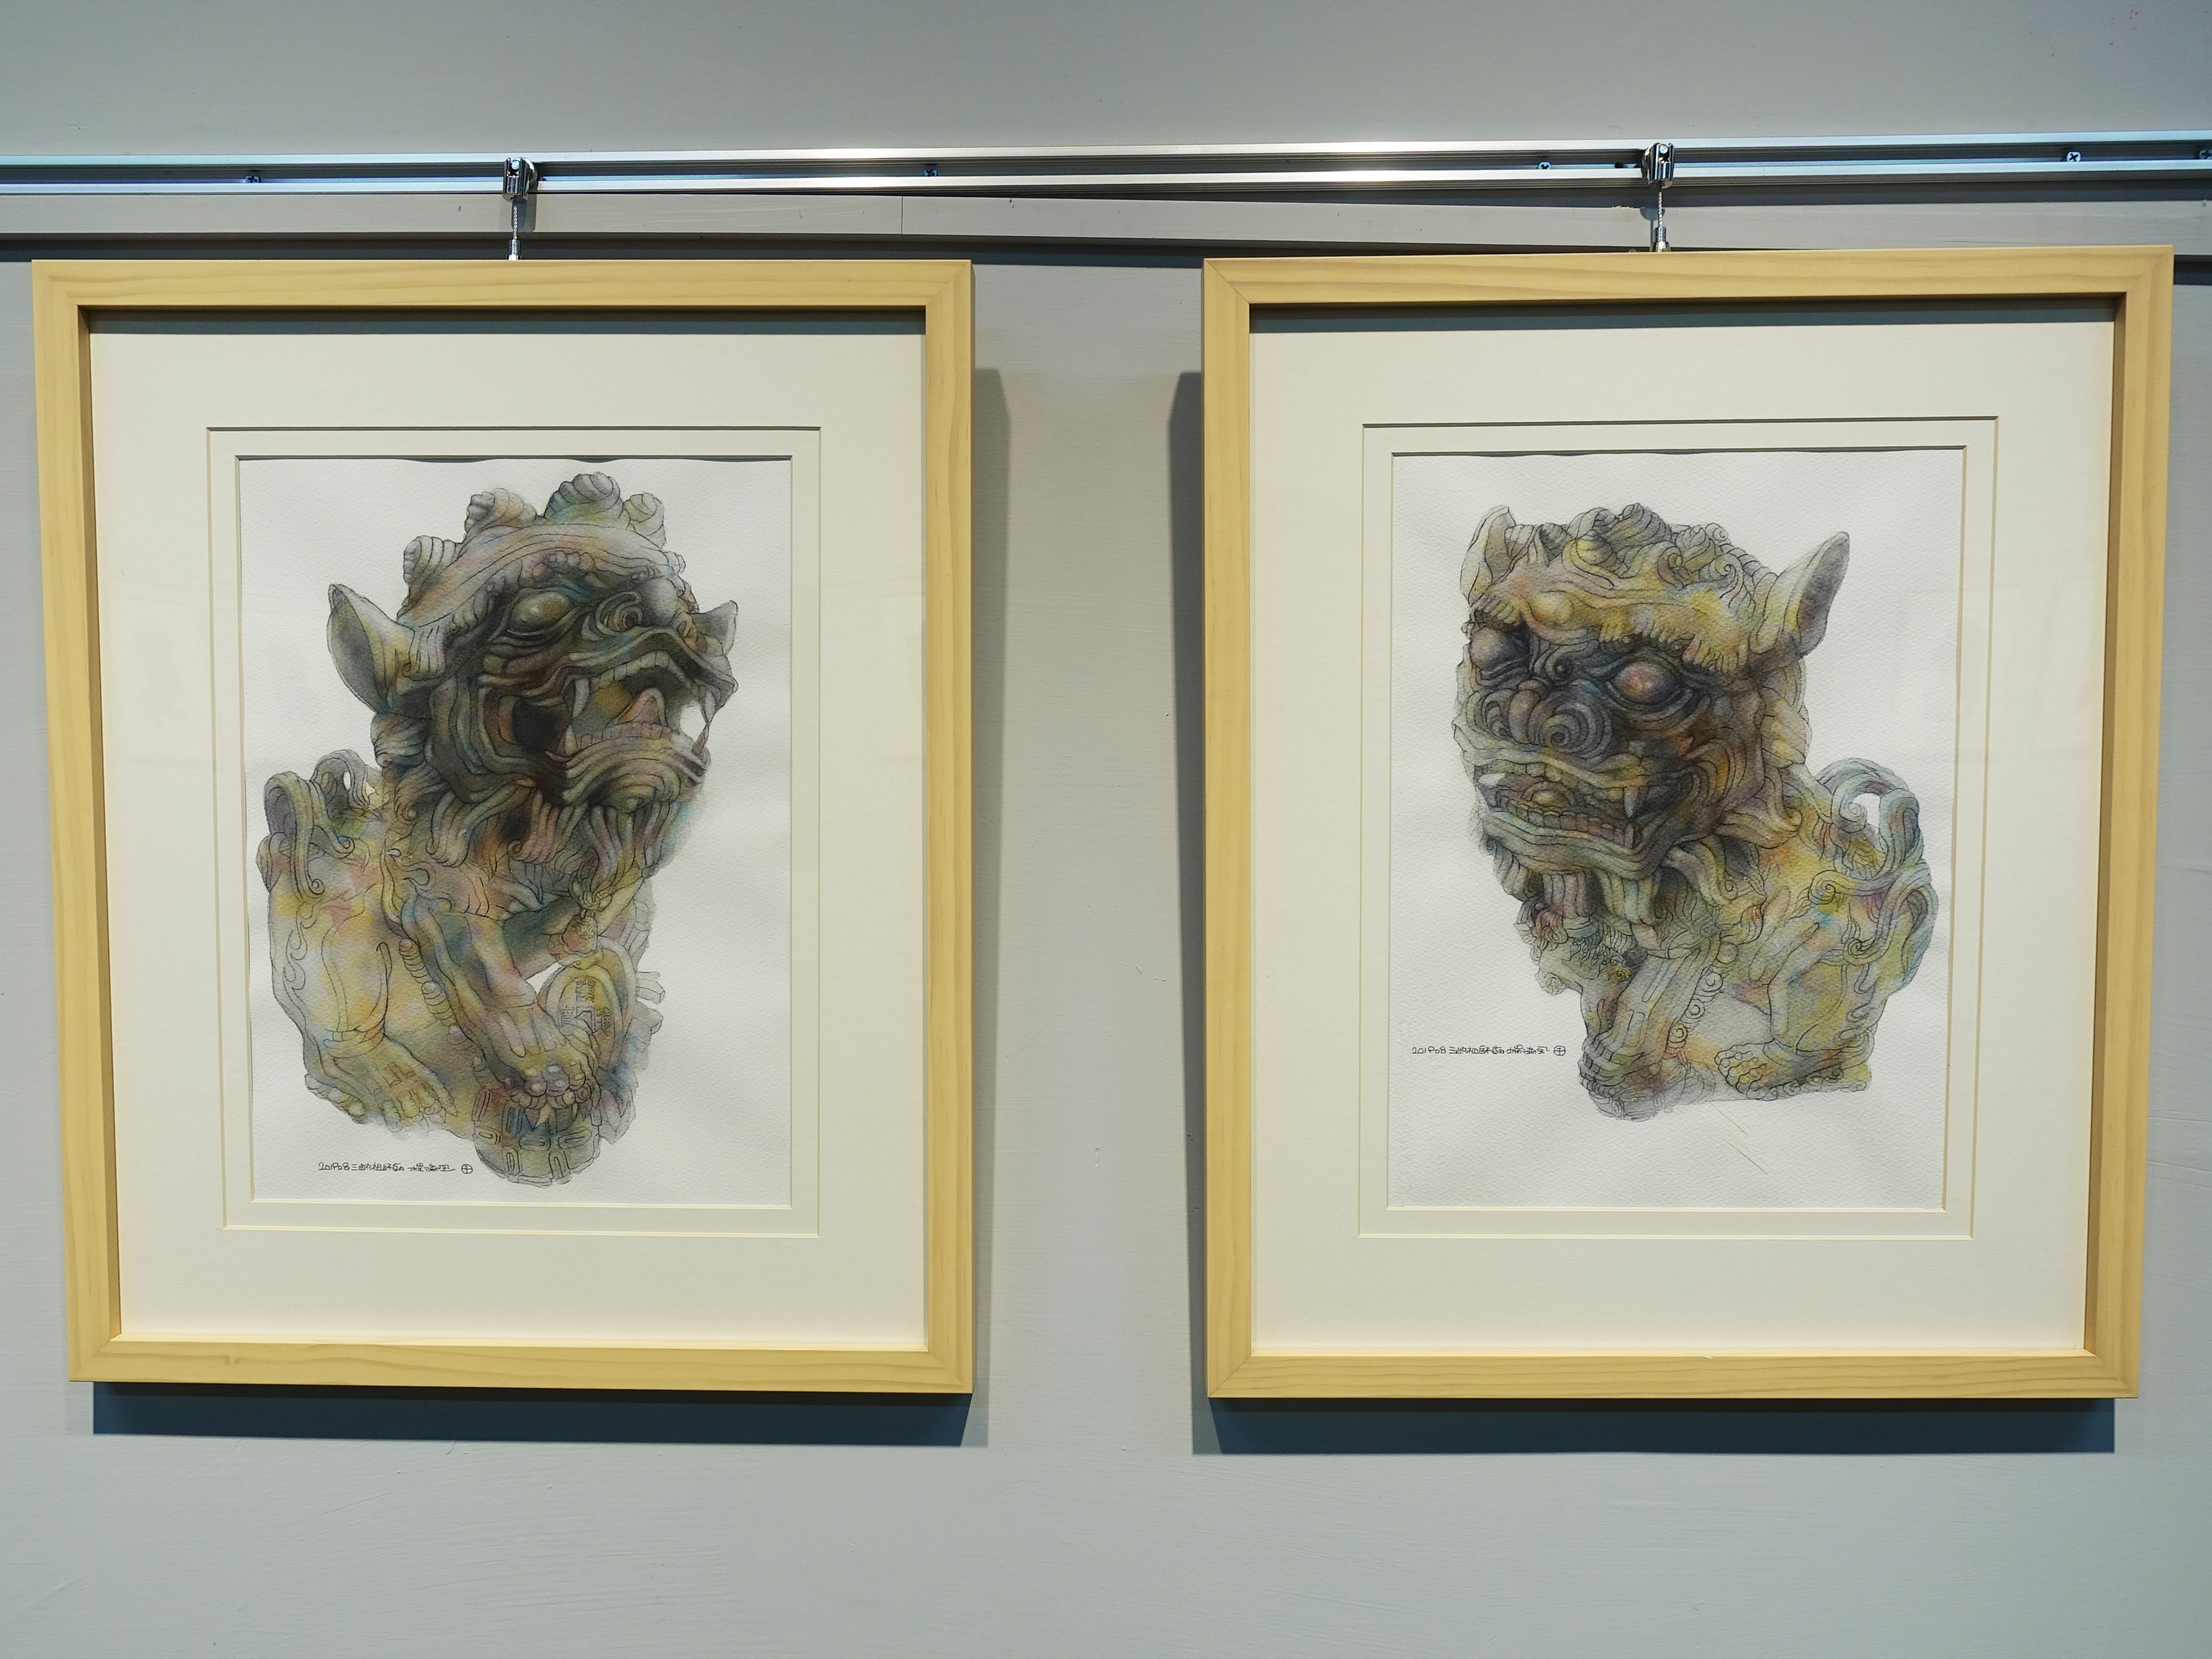 藝術家楊德全於第三屆出彰化城藝術展「古城的苗圃」展出《石獅子系列-三峽祖師廟門前獅》系列。